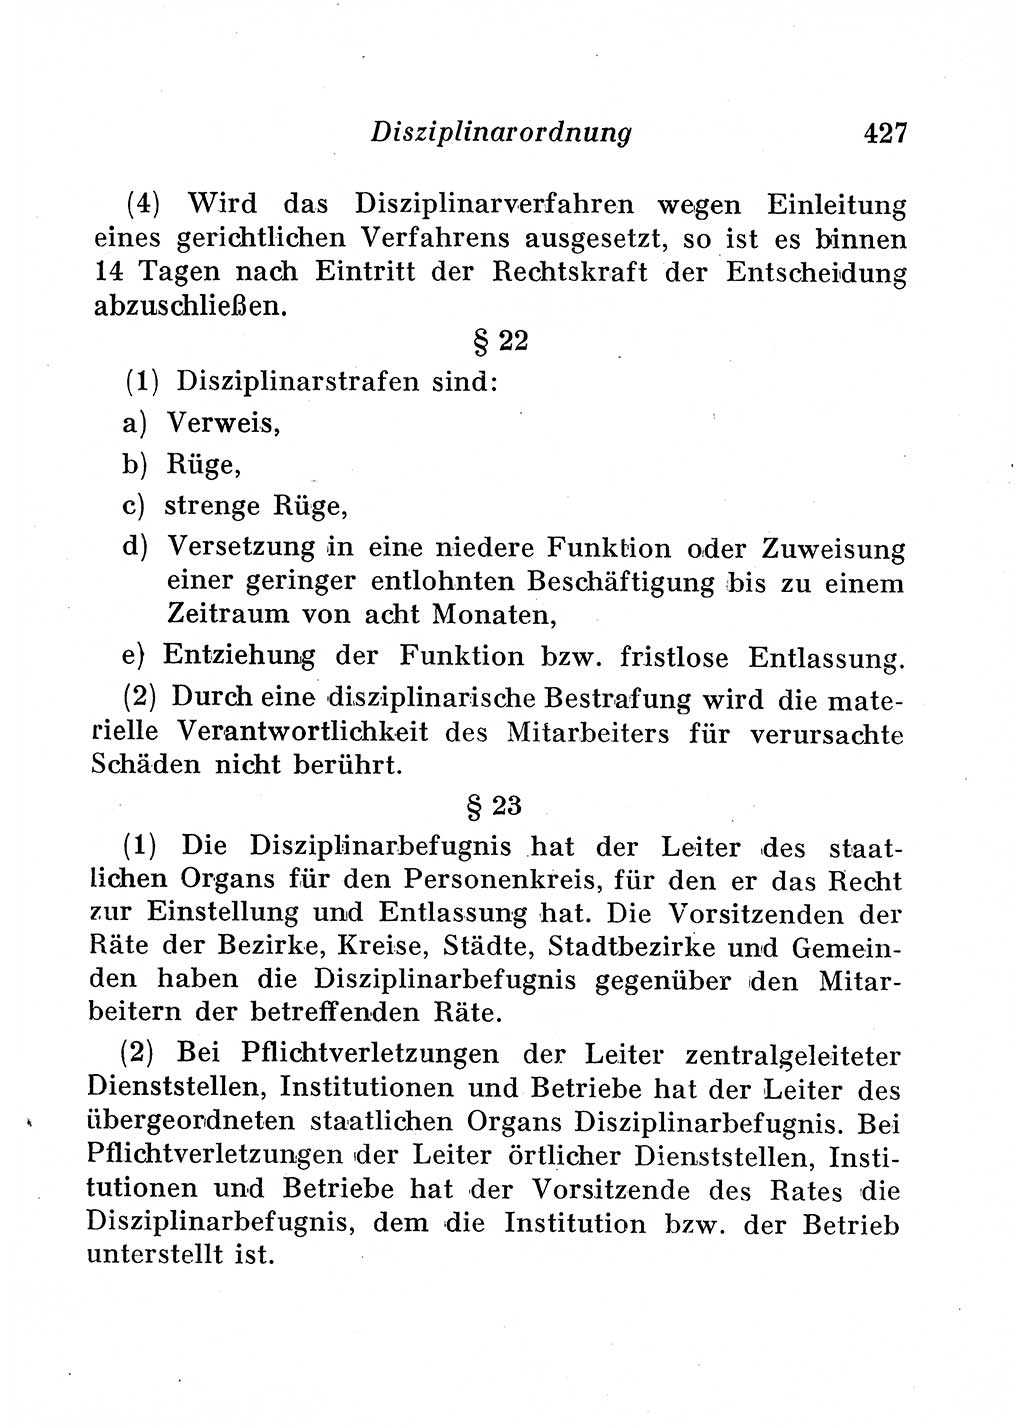 Staats- und verwaltungsrechtliche Gesetze der Deutschen Demokratischen Republik (DDR) 1958, Seite 427 (StVerwR Ges. DDR 1958, S. 427)